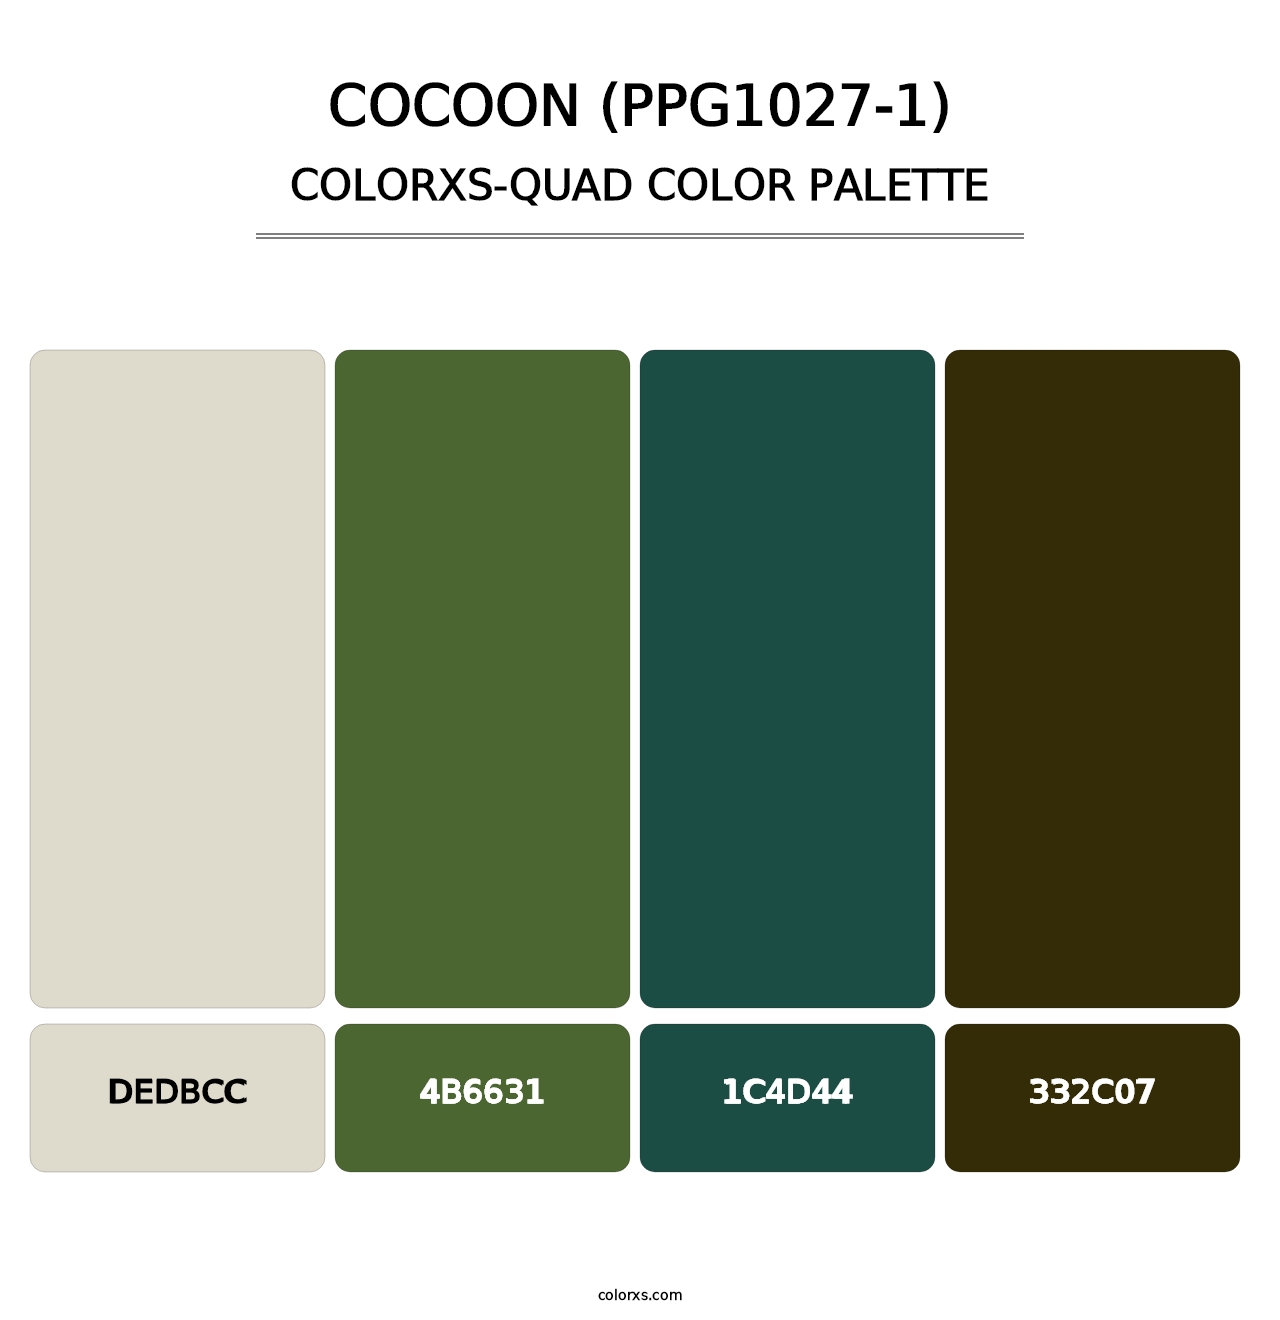 Cocoon (PPG1027-1) - Colorxs Quad Palette